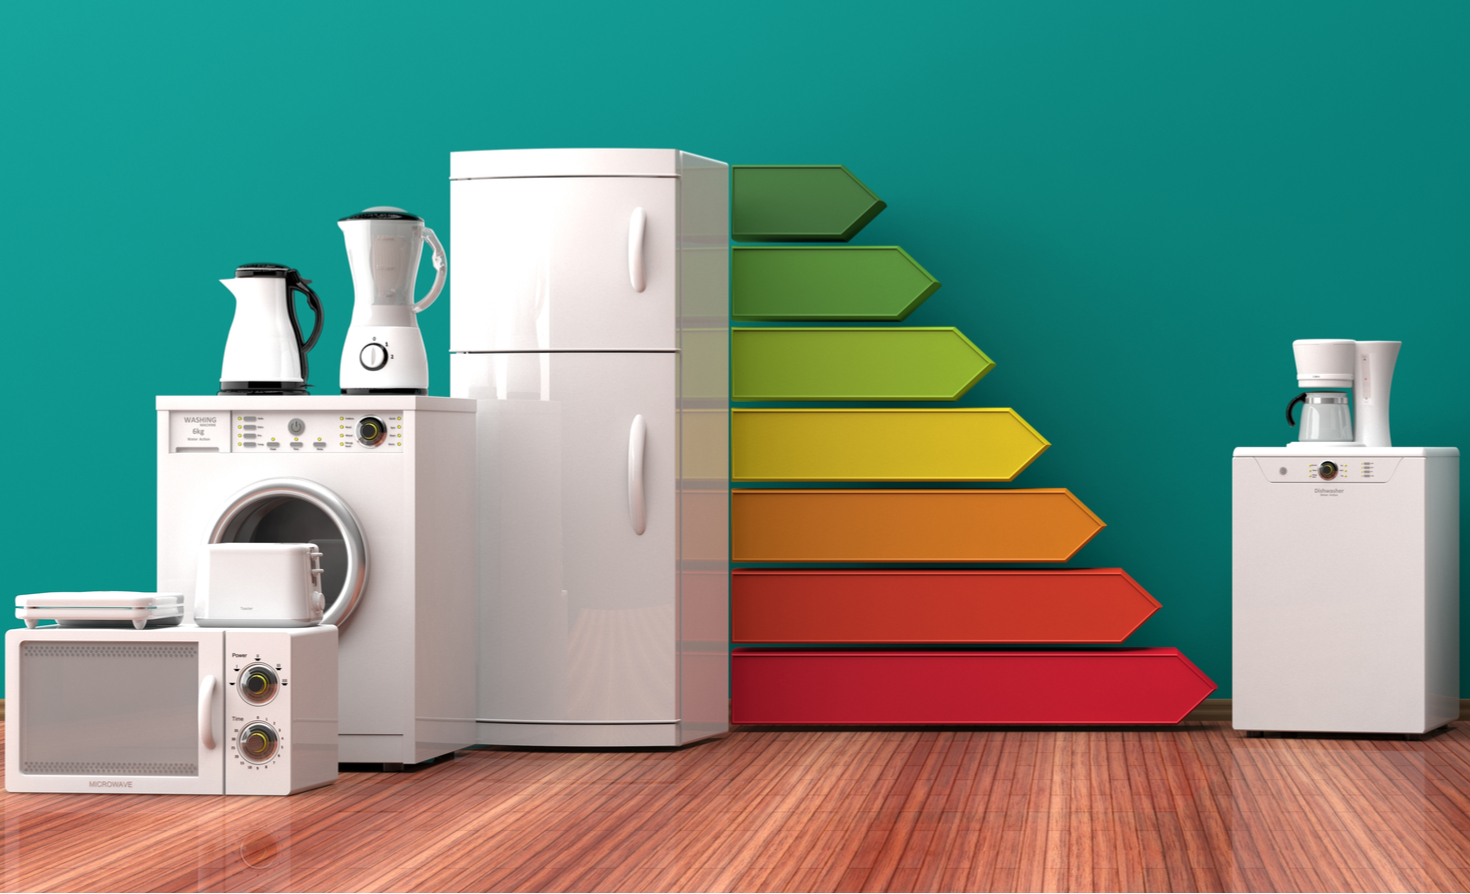 Energy-efficient appliances